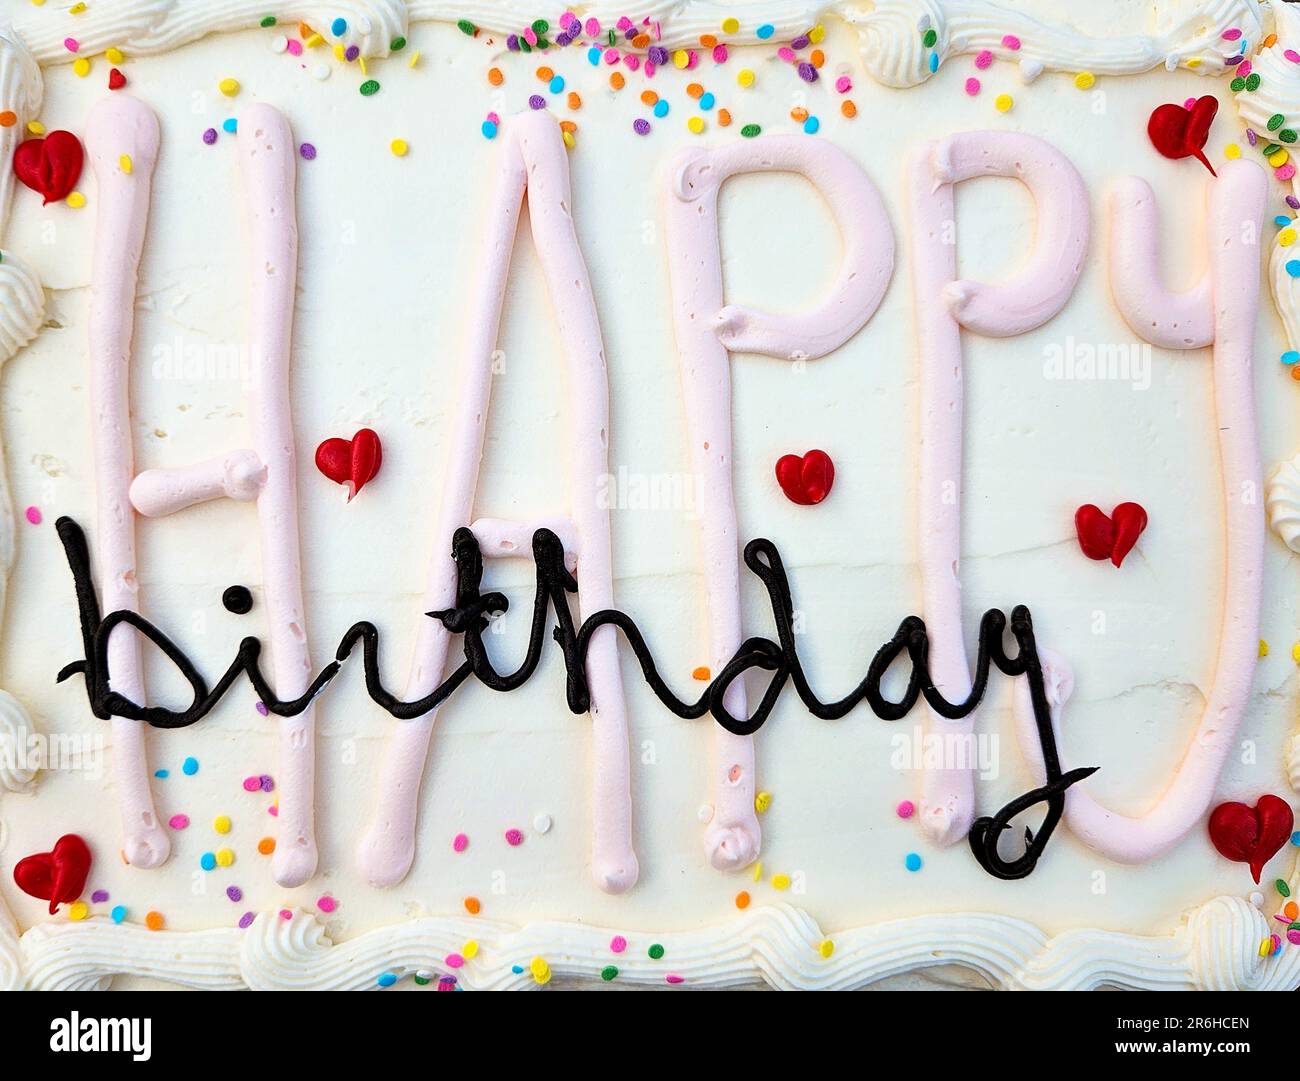 Buon compleanno testo sulla torta bianca glassa con cuori rossi e spruzzi colorati Foto Stock